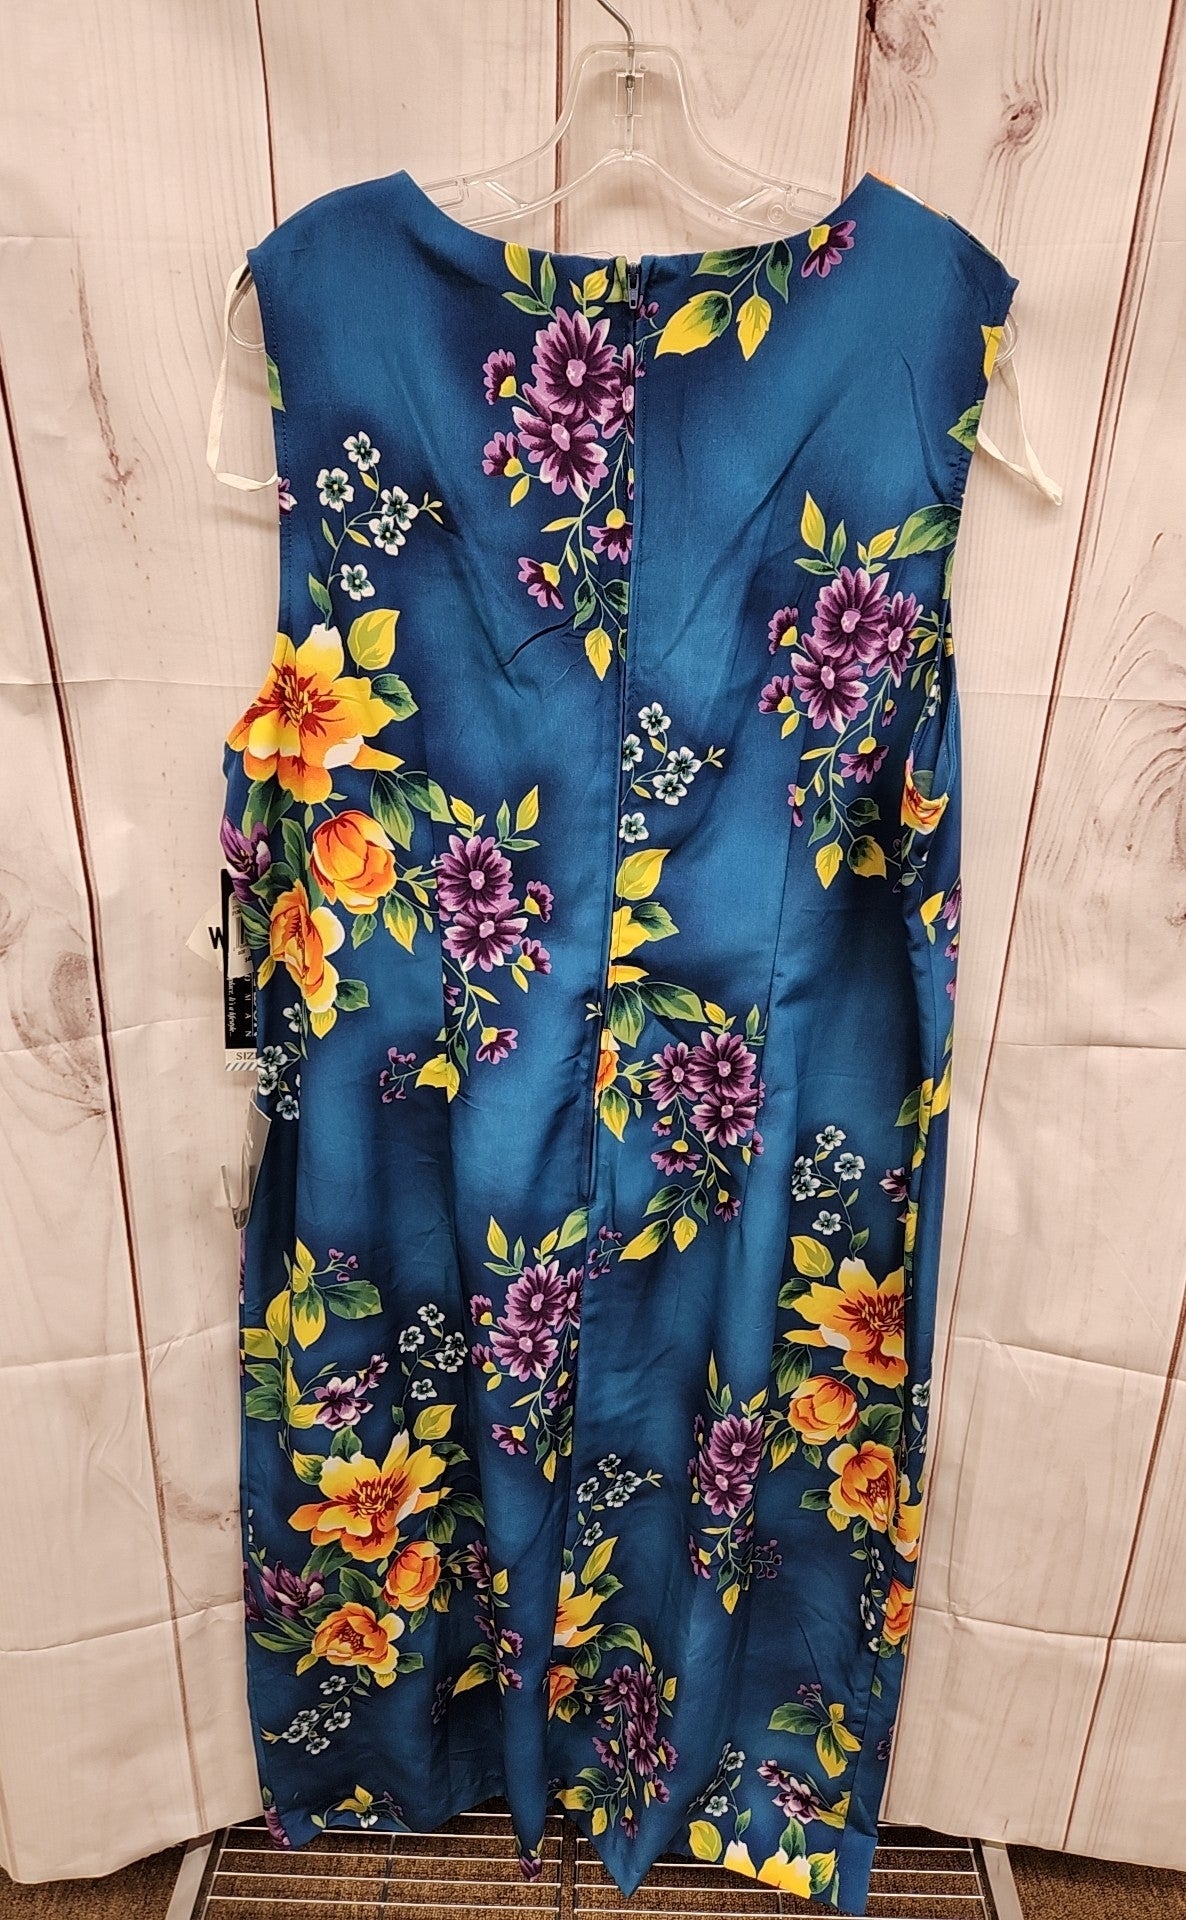 Sag Harbor Women's Size 20W Teal Floral Dress